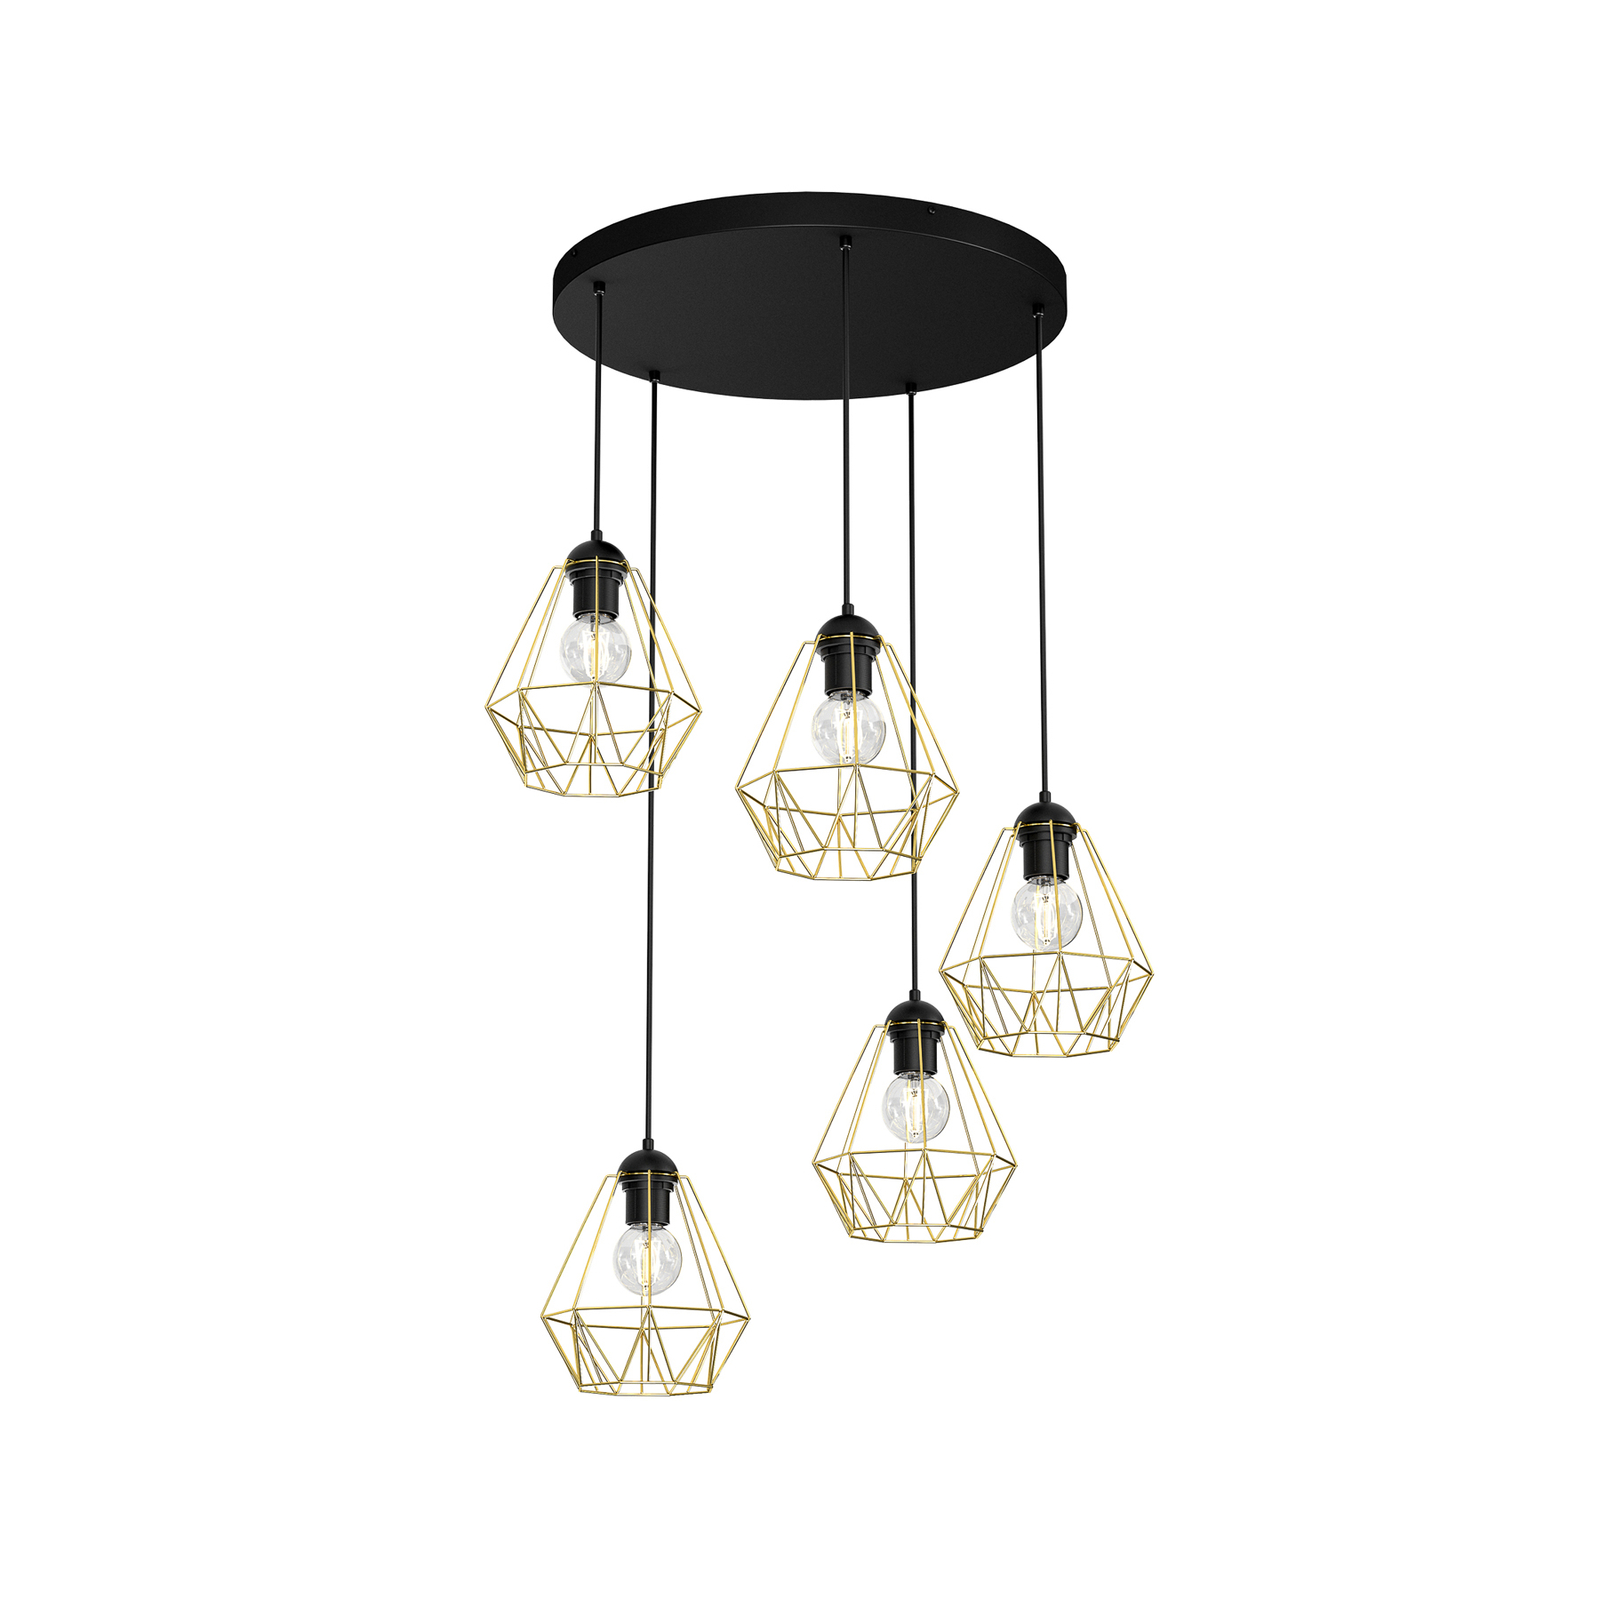 Jin hanglamp, zwart/messing, 5-lamps, rond